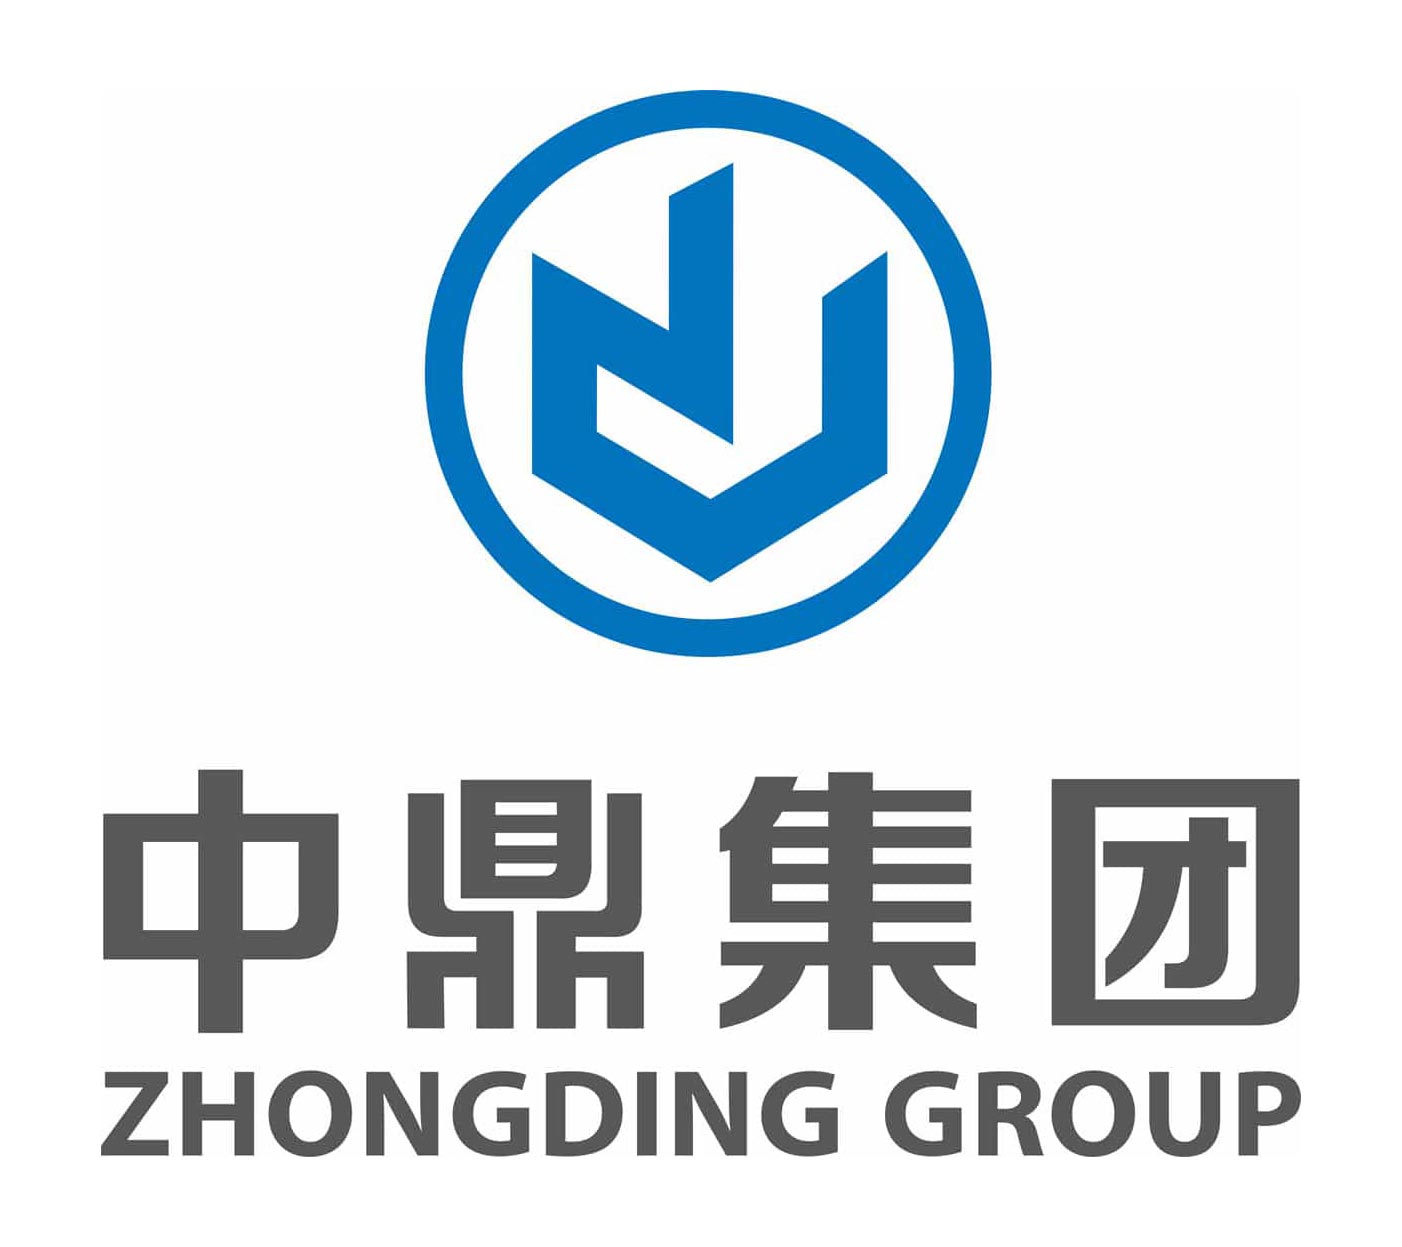 zhongding-logo-kaco-01